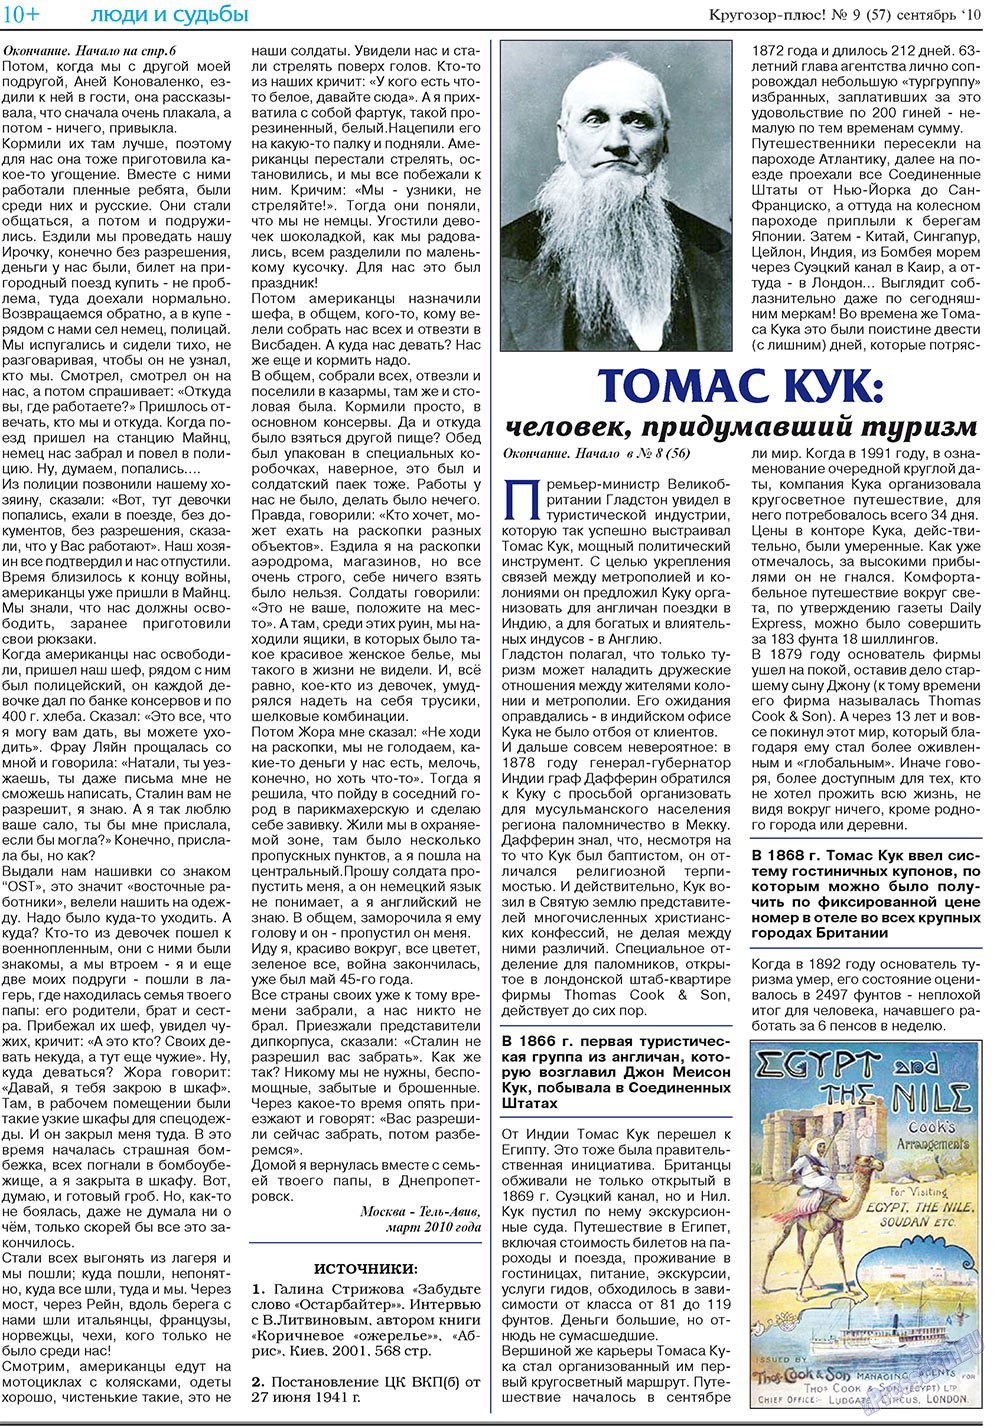 Кругозор плюс!, газета. 2010 №9 стр.26